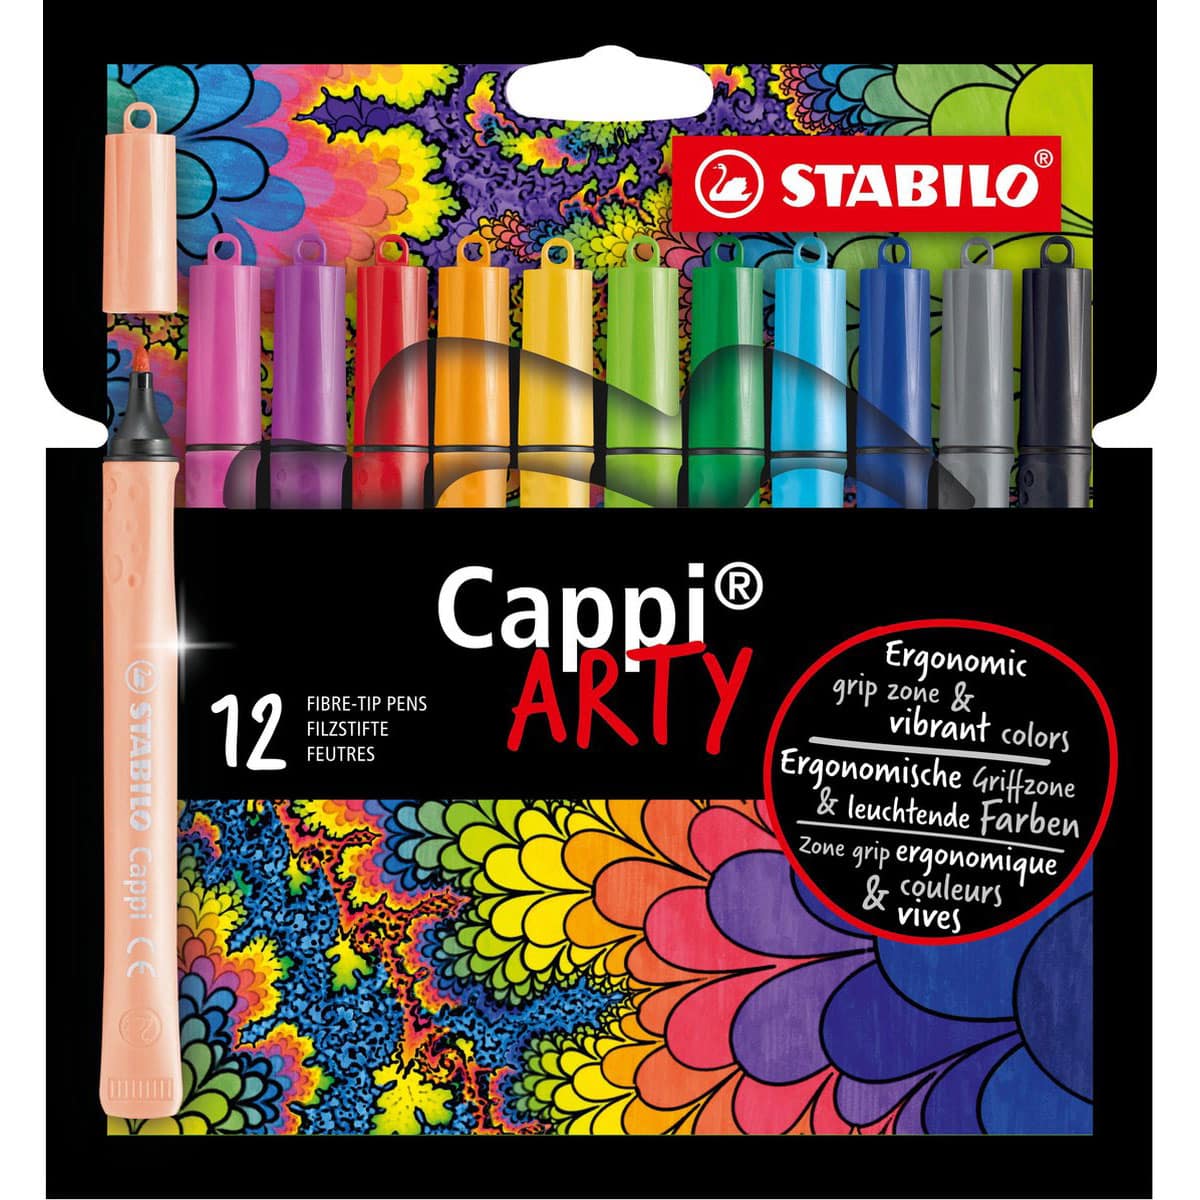 moederlijk Uitgaven Dhr STABILO Cappi viltstiften set van 12 kleuren | Suitup Art Supplies